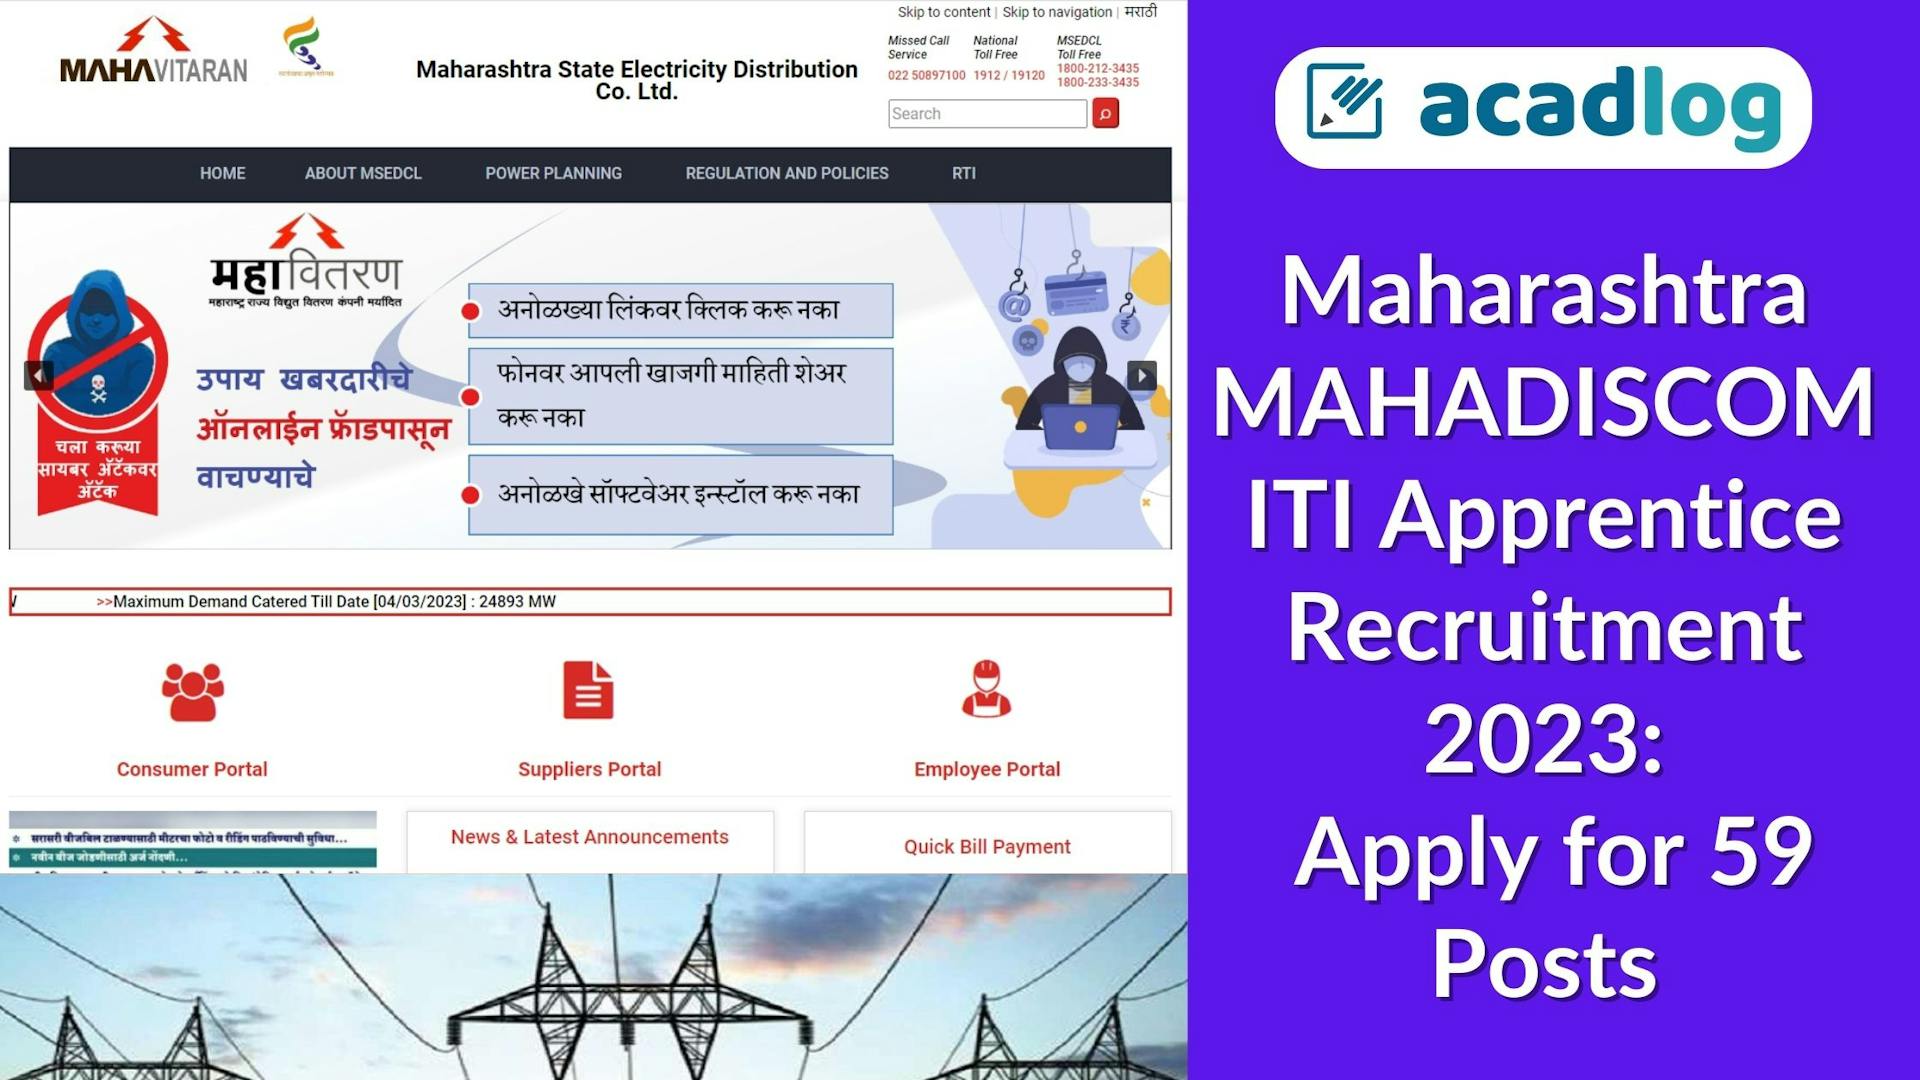 Maharashtra MAHADISCOM ITI Apprentice Recruitment 2023: Apply for 59 Posts